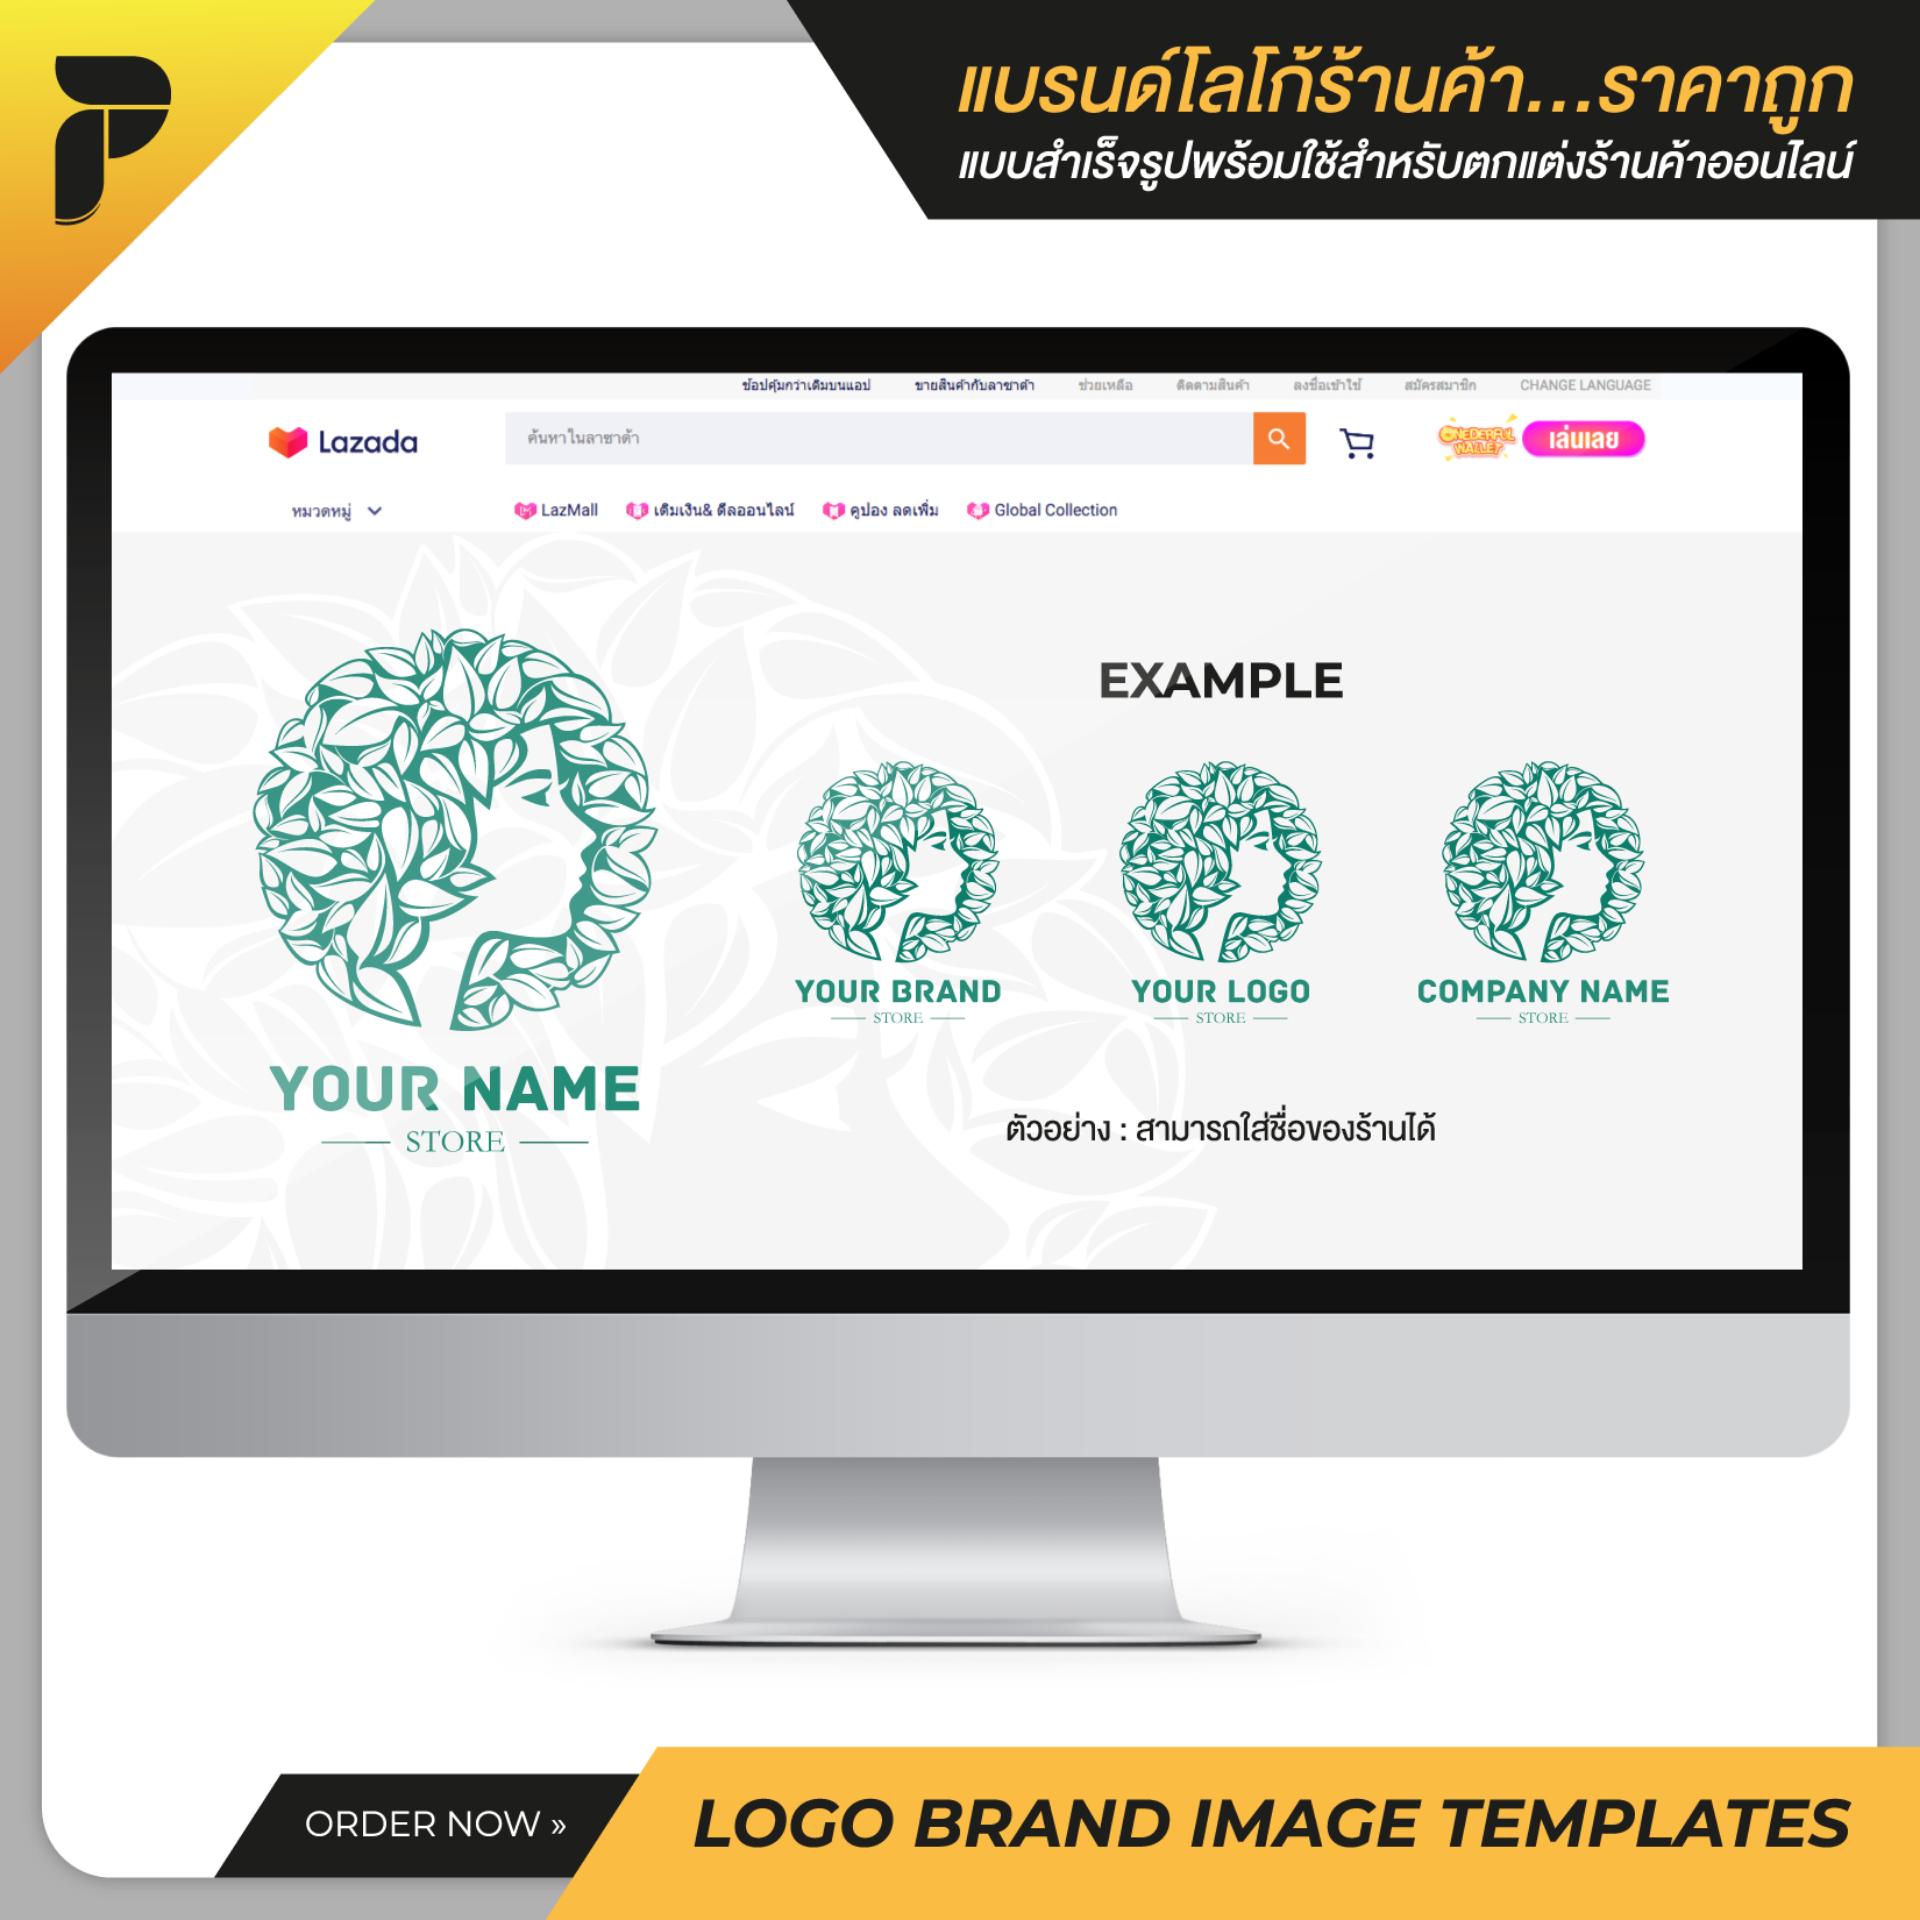 รูปโปรไฟล์ร้าน โลโก้ร้าน แบรนด์ร้านค้าสำเร็จรูปพร้อมใช้สำหรับตกแต่งร้านค้าออนไลน์ ไลน์ เฟสบุ๊ค เว็บไซต์ Profile Logo Brand Image Template Ready-to-Work by PathGraphic Studio